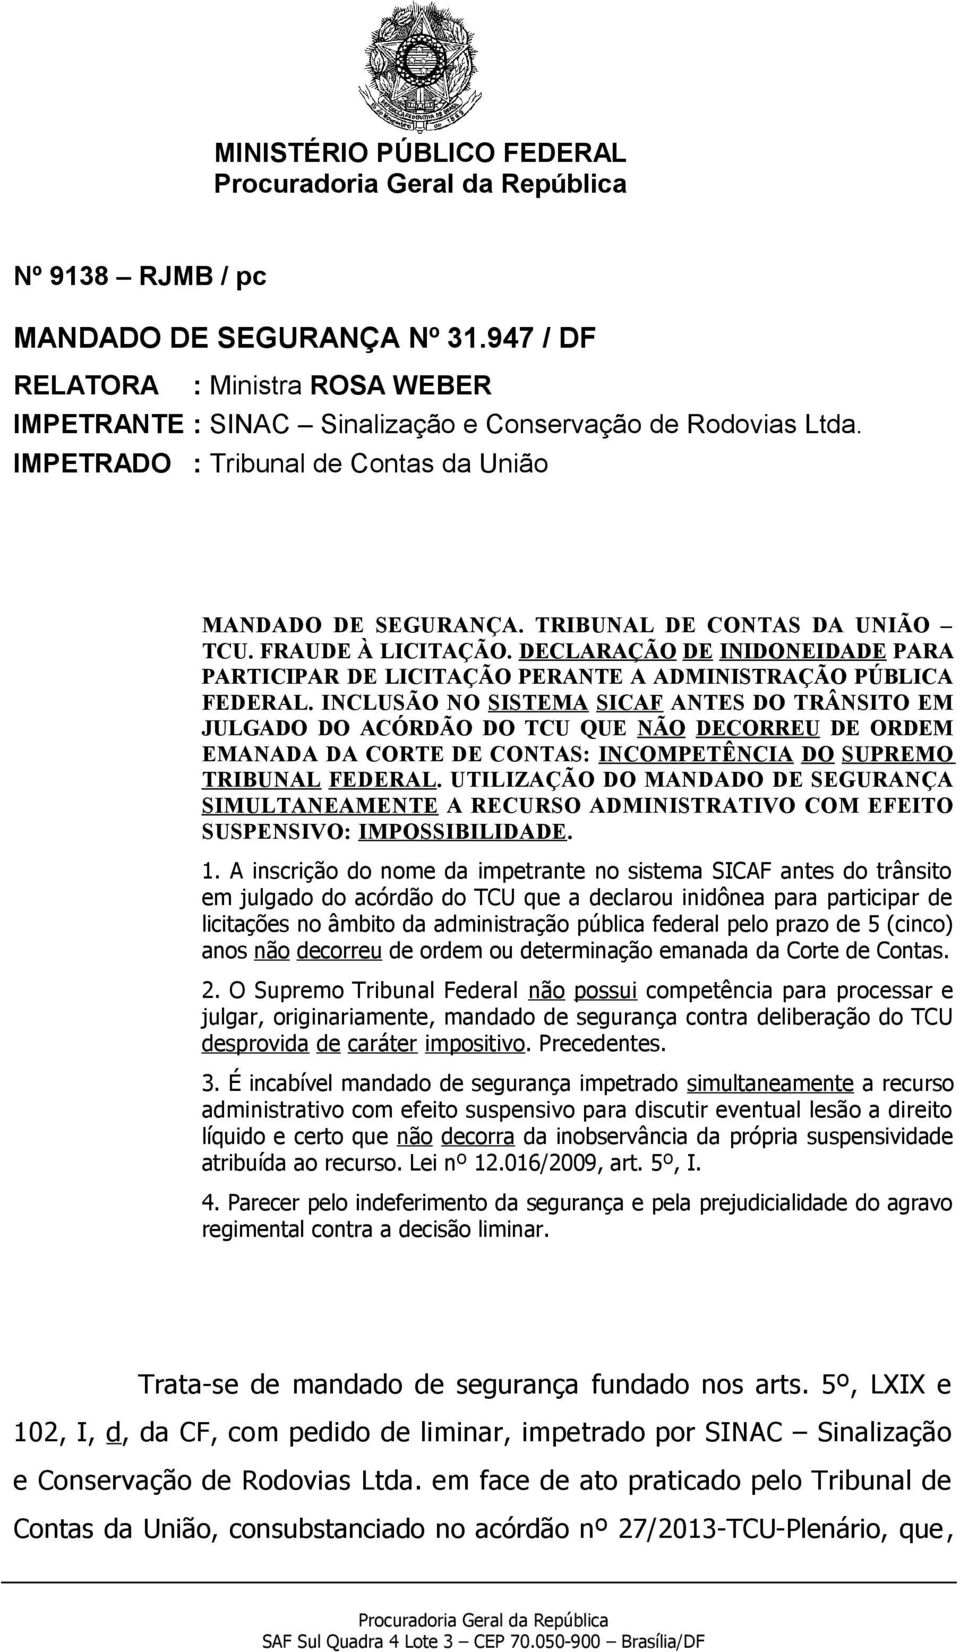 DECLARAÇÃO DE INIDONEIDADE PARA PARTICIPAR DE LICITAÇÃO PERANTE A ADMINISTRAÇÃO PÚBLICA FEDERAL.